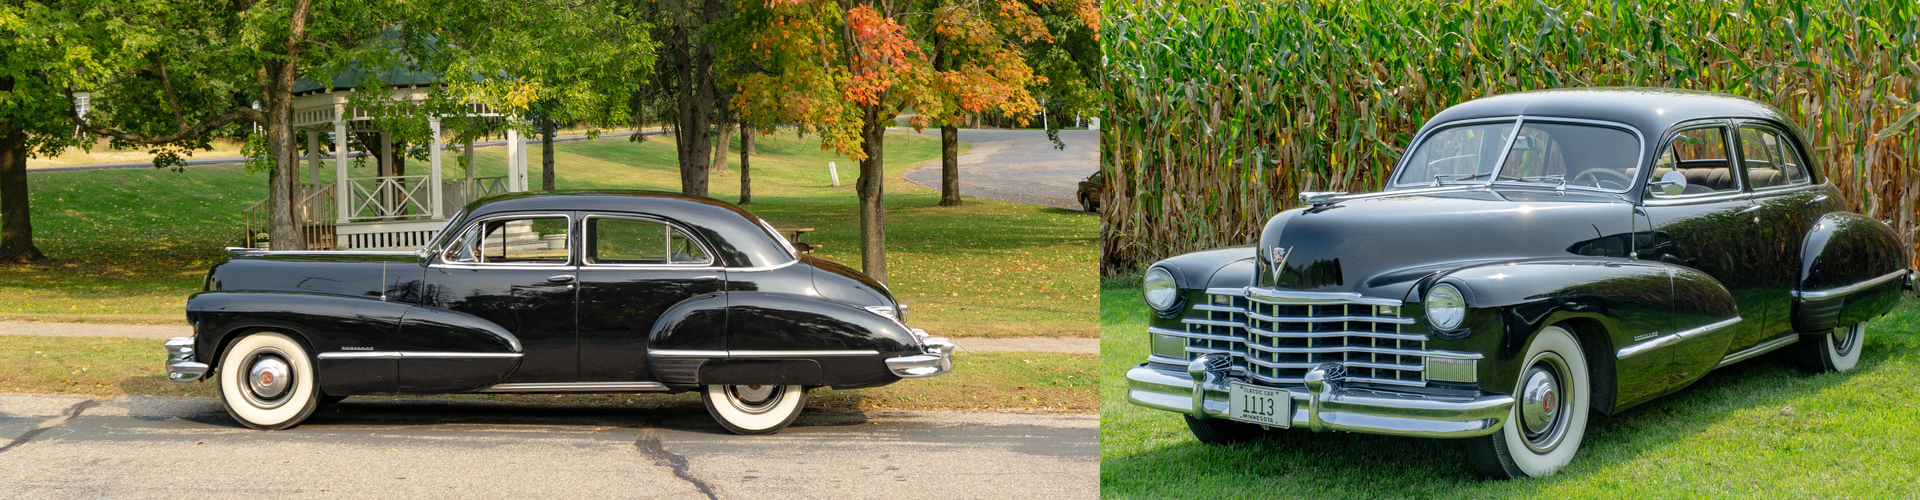 Classic Car Wedding Transportation 1946 Cadillac